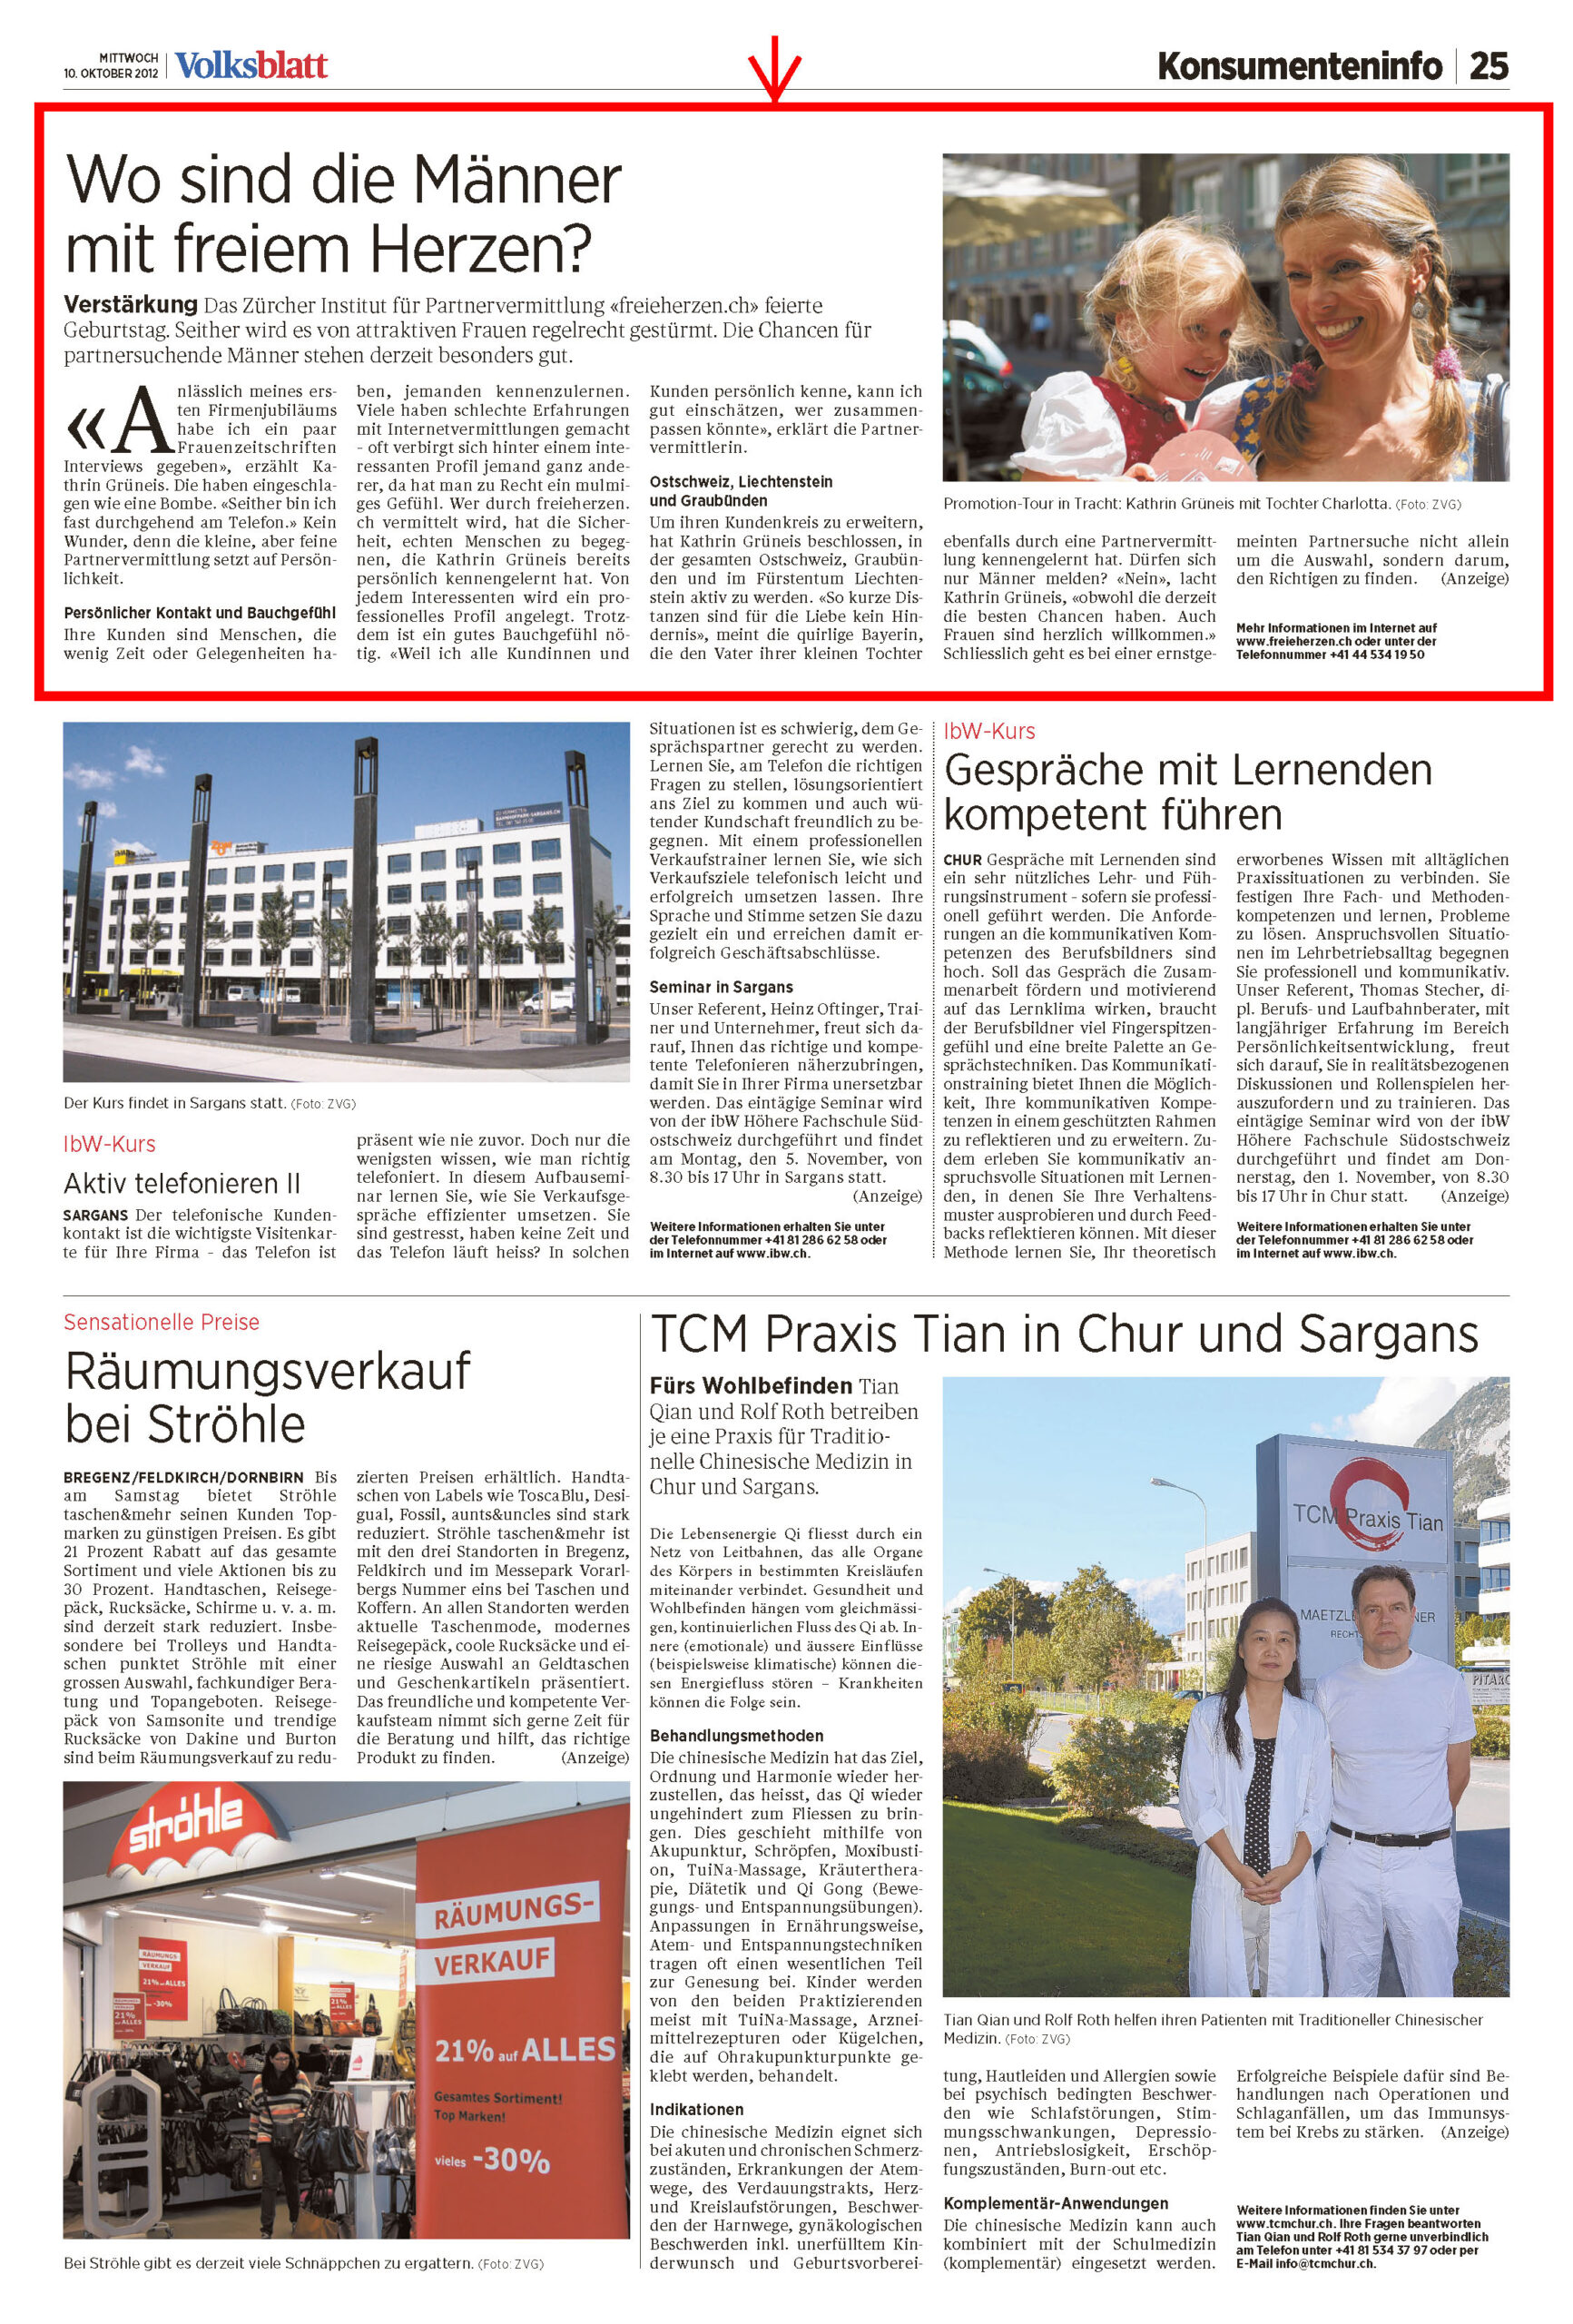 Zeitungsausschnitt von freieherzen.ch im Volksblatt vom Oktober 2012